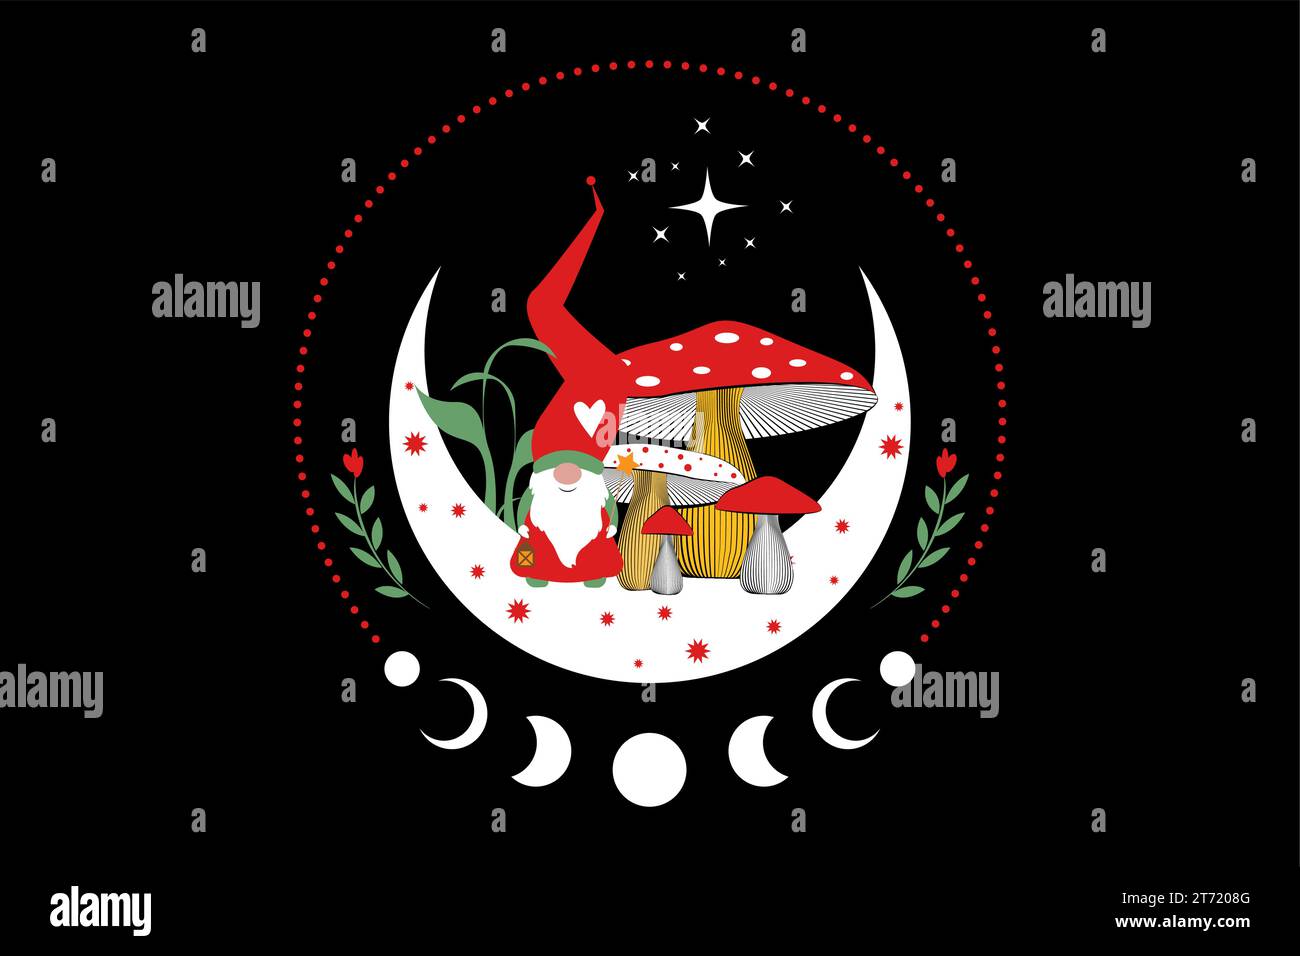 Magic Gnome nei mistici boschi di funghi sulla luna a mezzaluna e sulle stelle. Simbolo del concetto di Natale, fungo esoterico stregato e fasi lunari. Magica Illustrazione Vettoriale